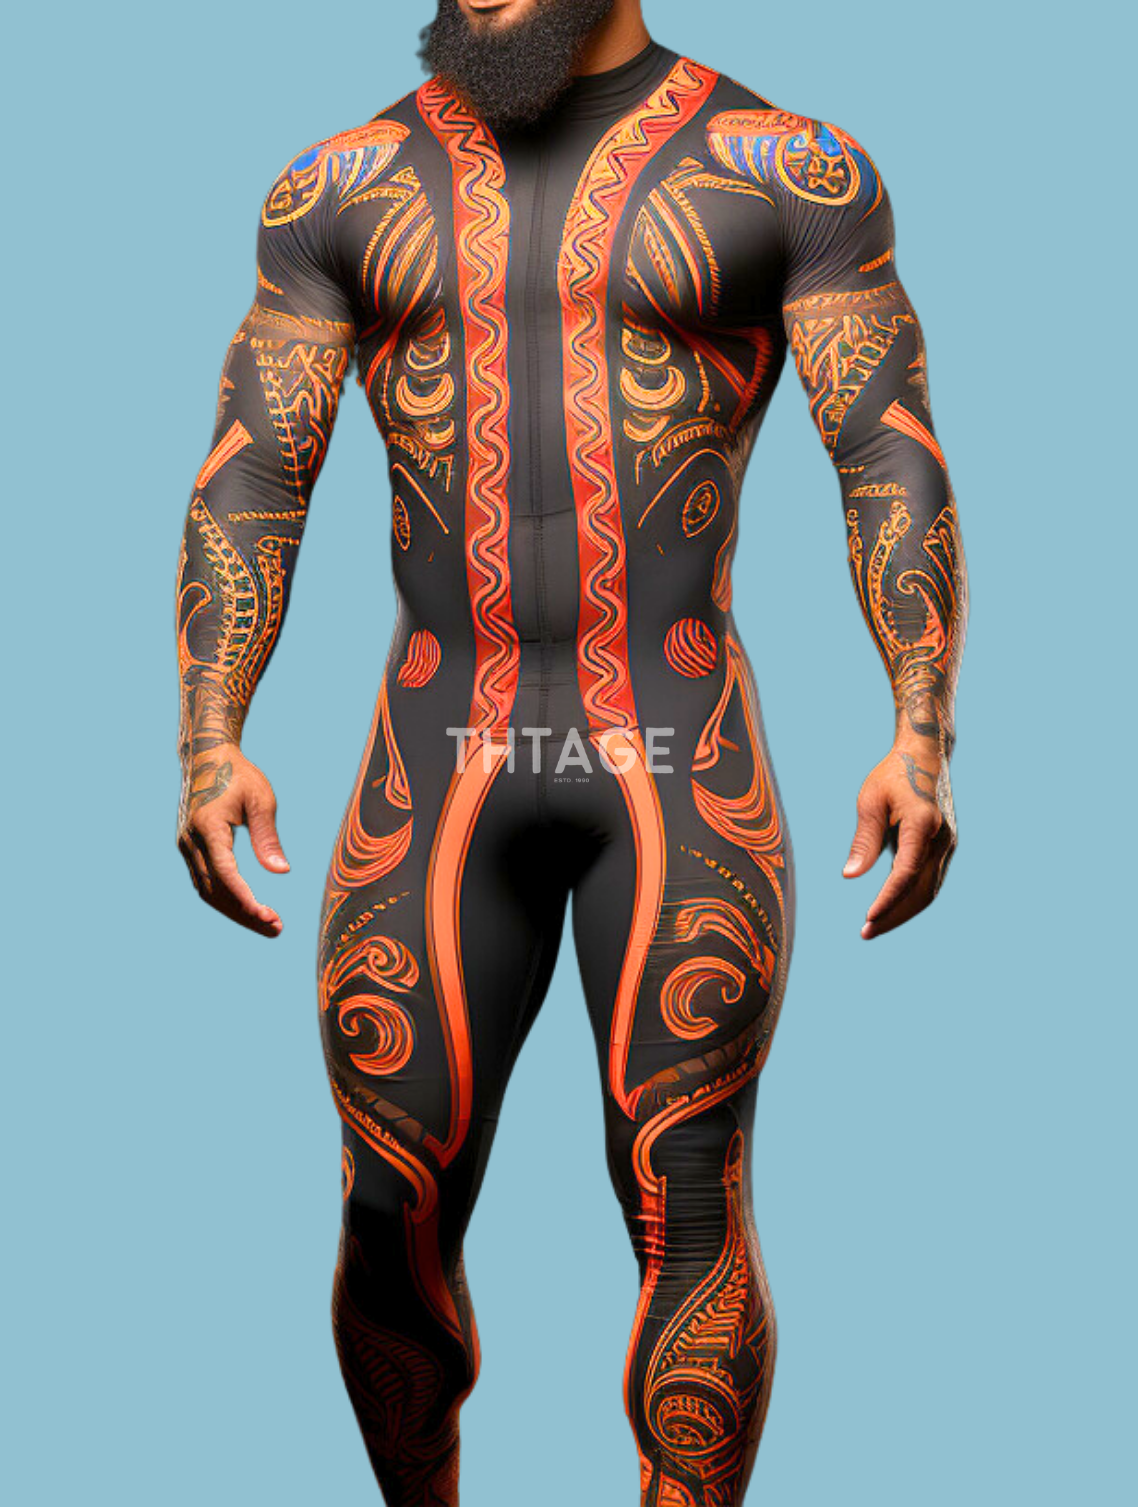 Viper Warrior Male Costume